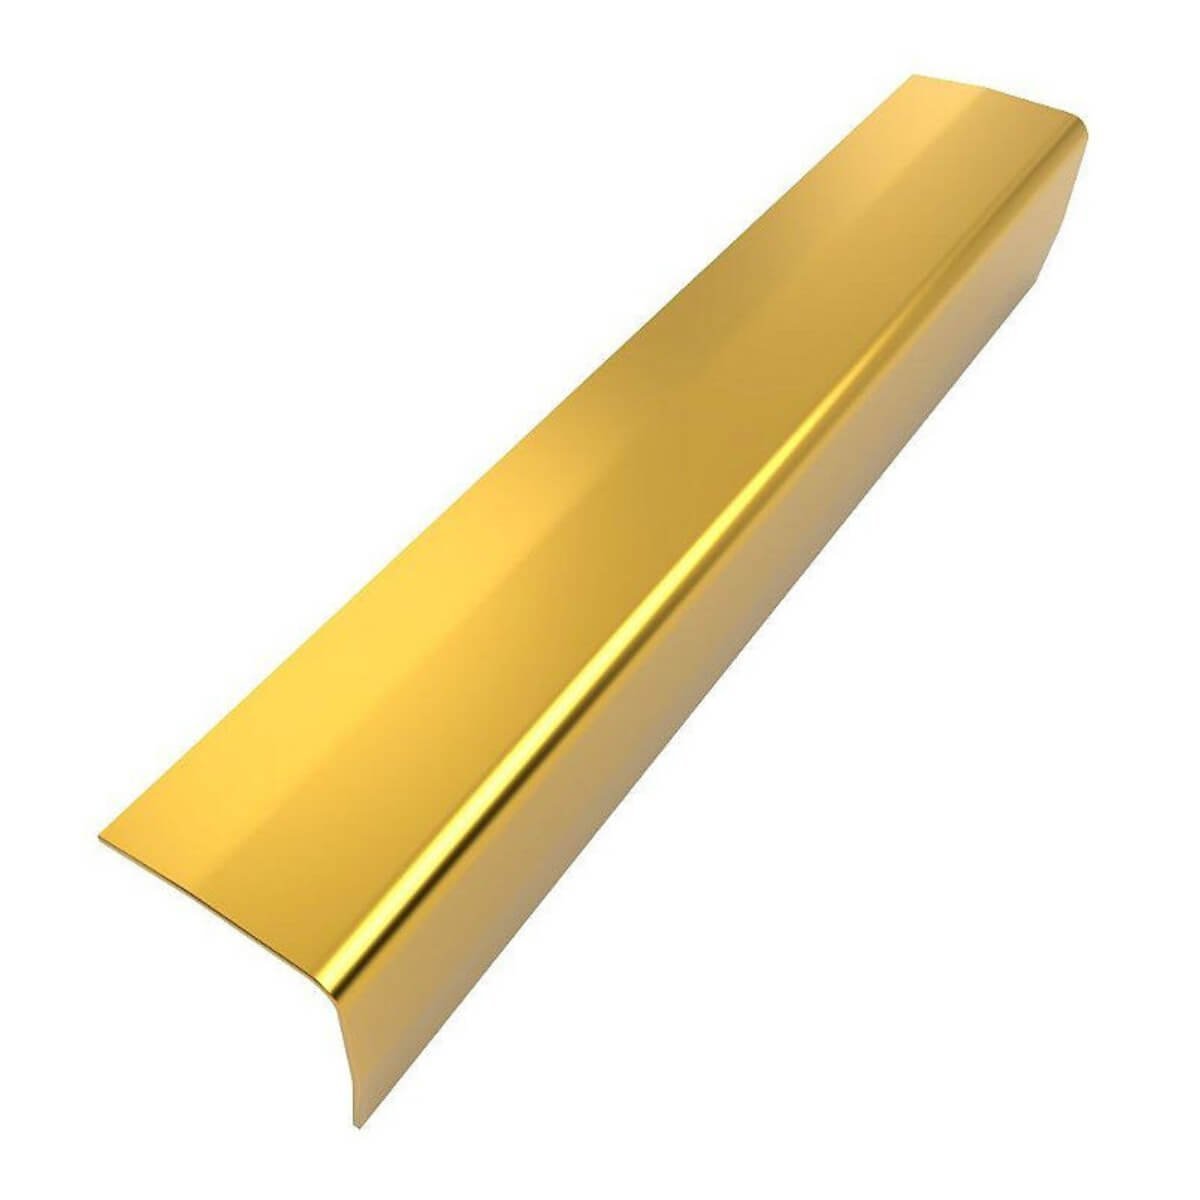 Perfil Cantoneira de Aço Inox 304 - Brilho, Dourado  - 11 x 11 x 2000 mm - 1